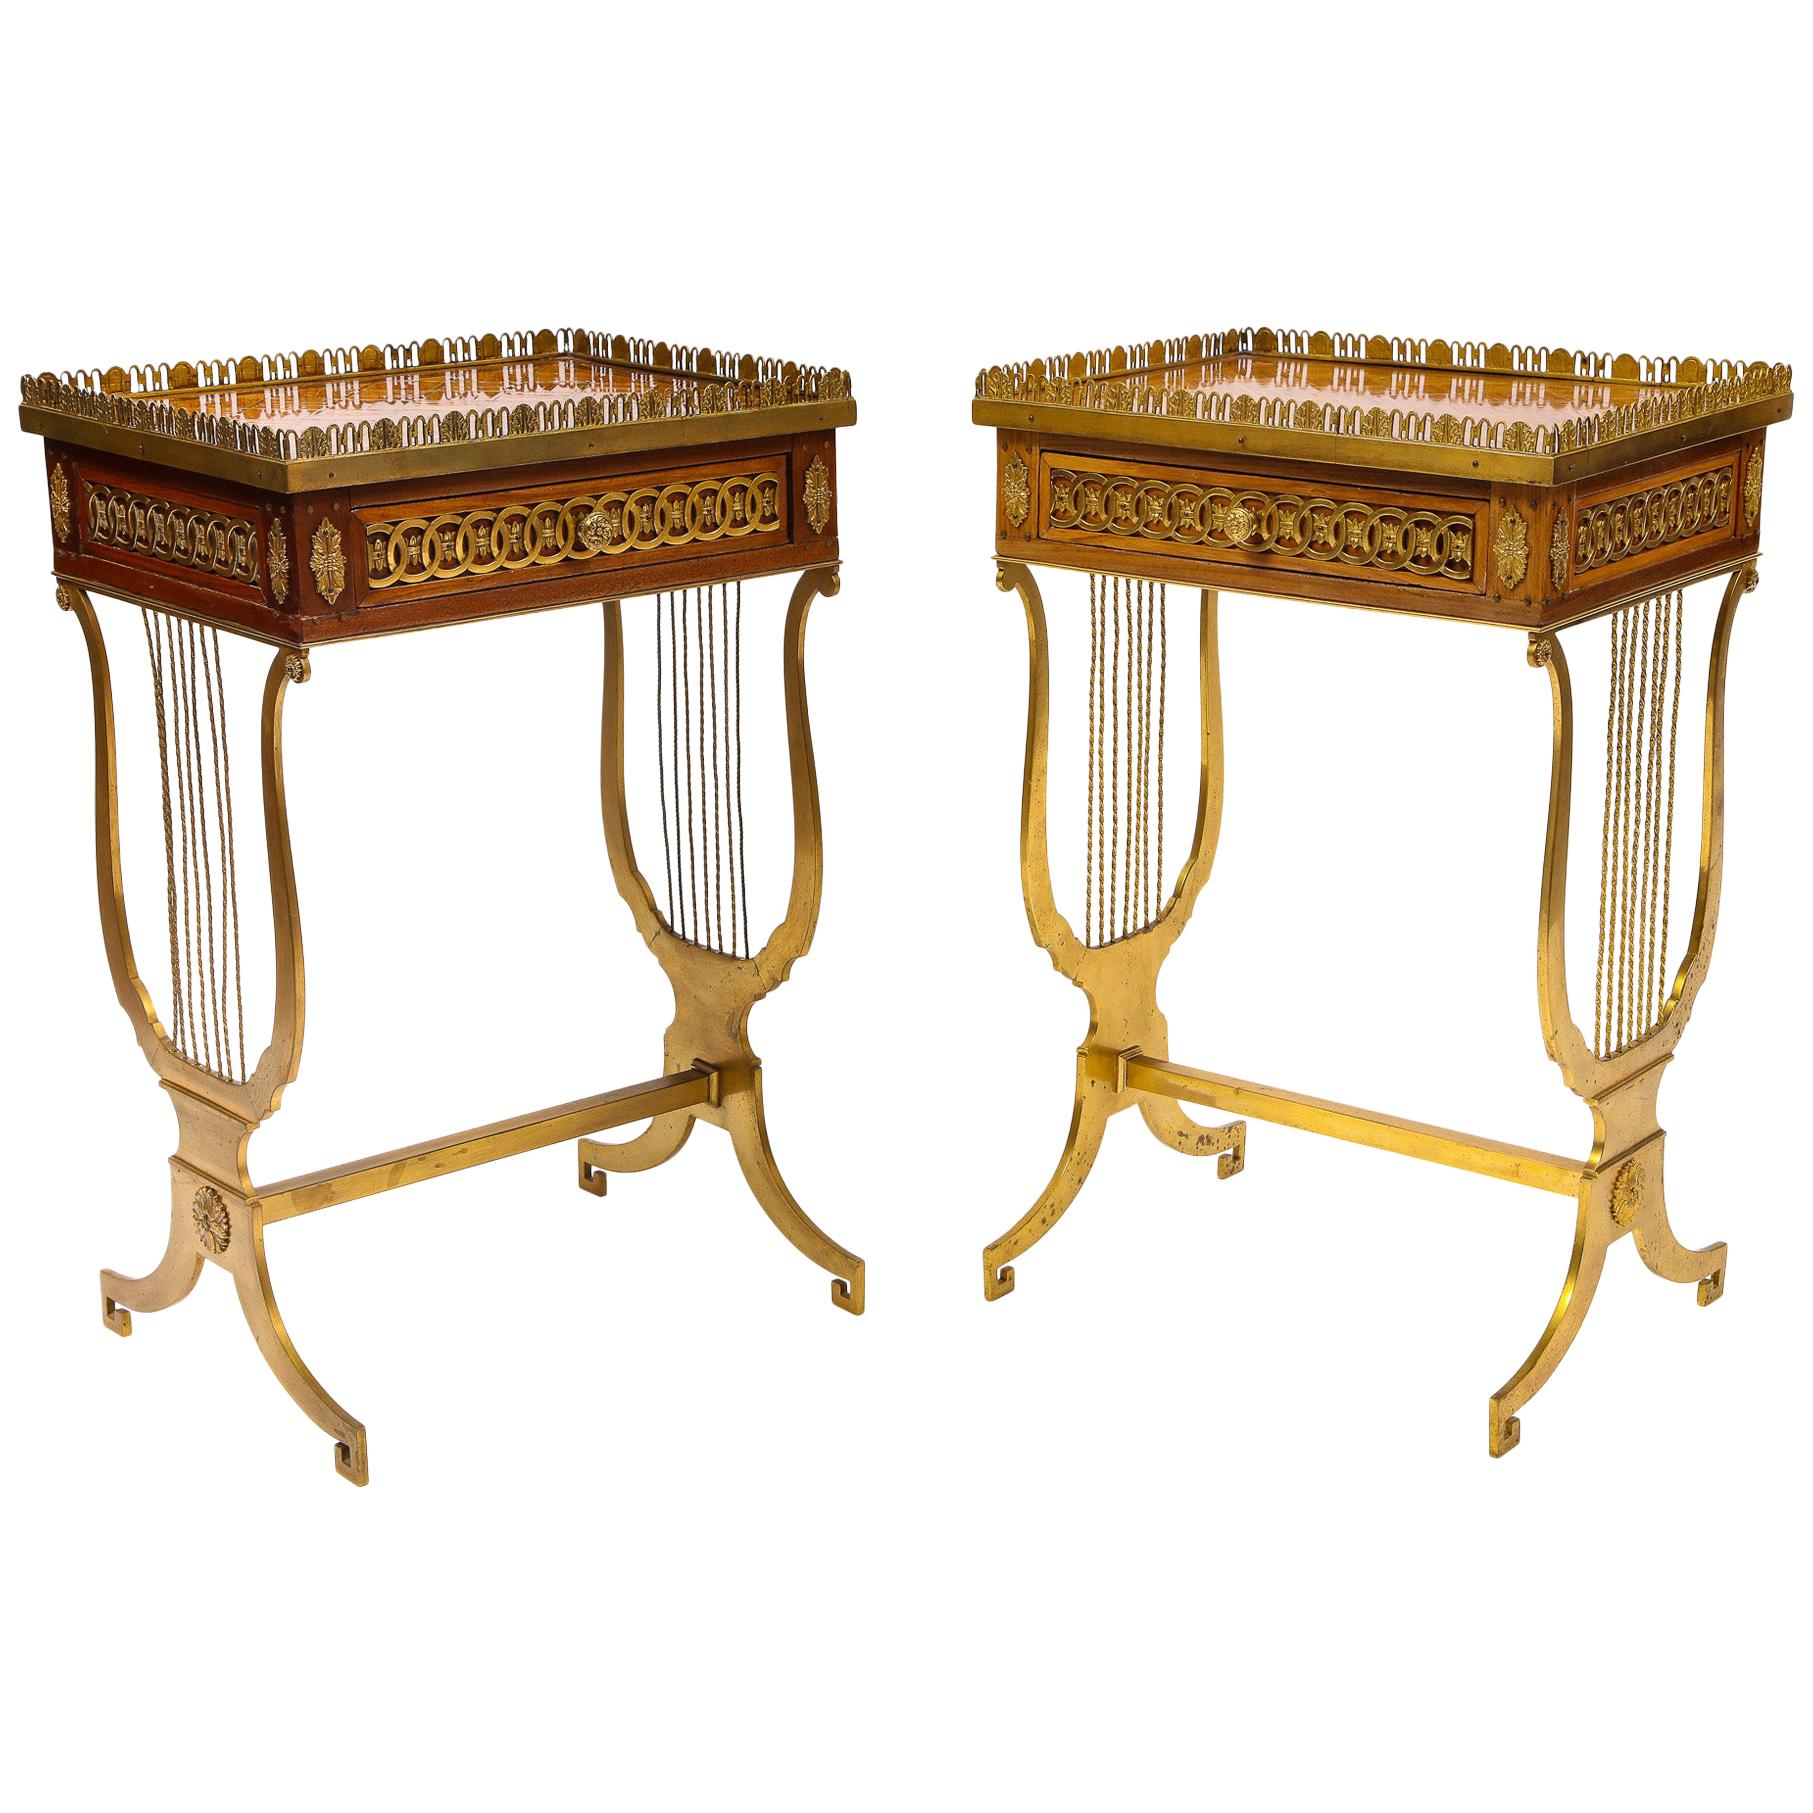 Paire de tables d'appoint rectangulaires françaises du XIXe siècle de forme rectangulaire avec pieds en forme de lyre en bronze